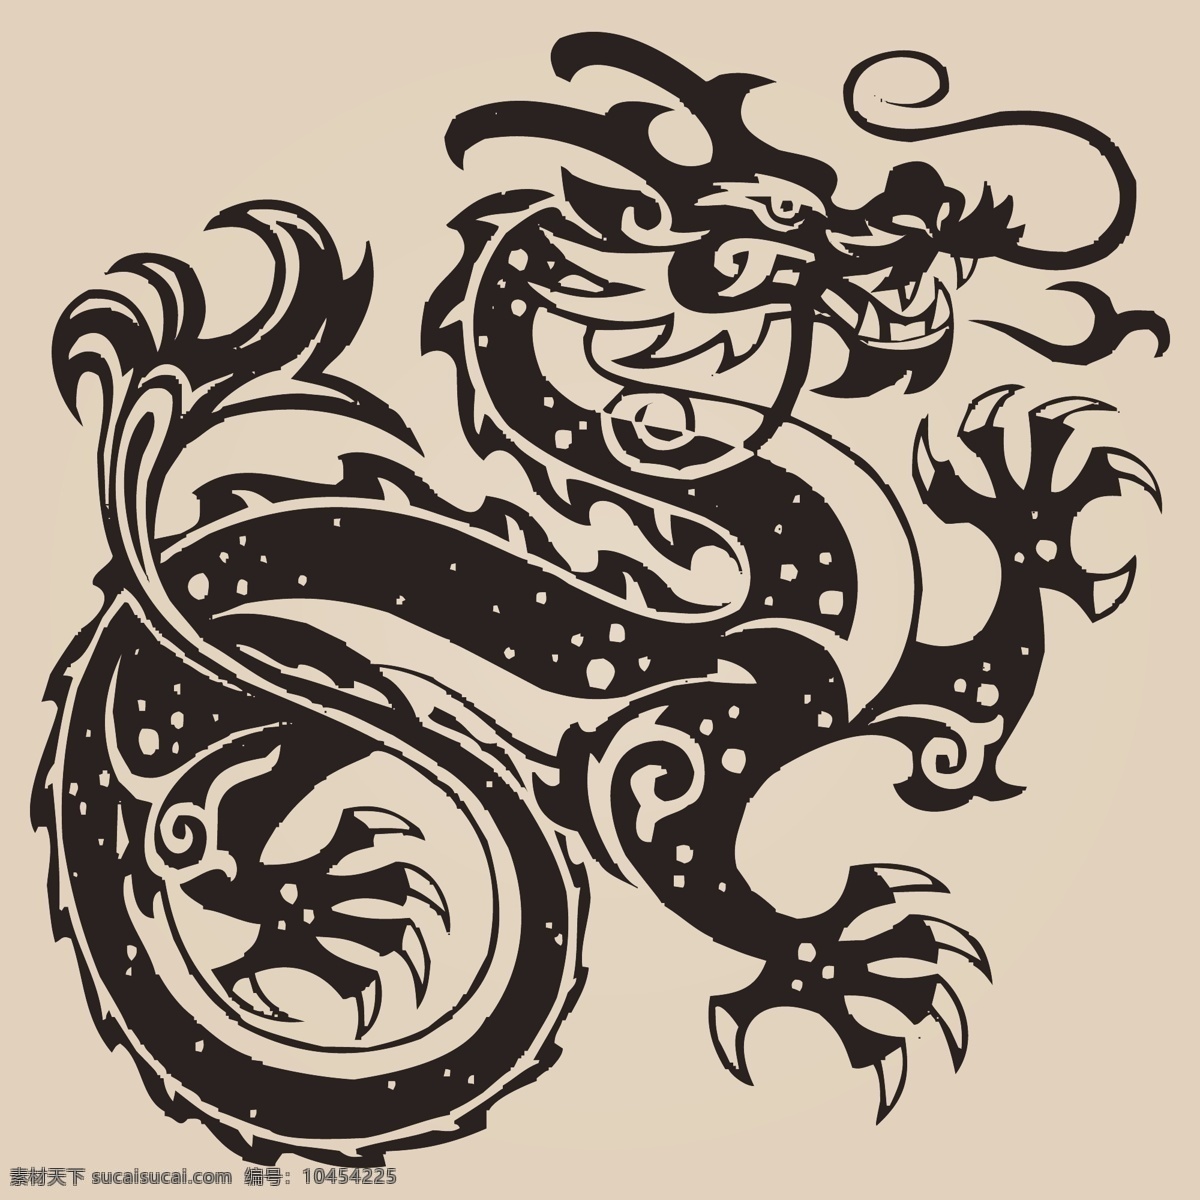 中国 龙 神龙 矢量 中国龙神龙 矢量素材 中国龙 纹身 龙纹身 龙矢量素材 五爪金龙 黑色